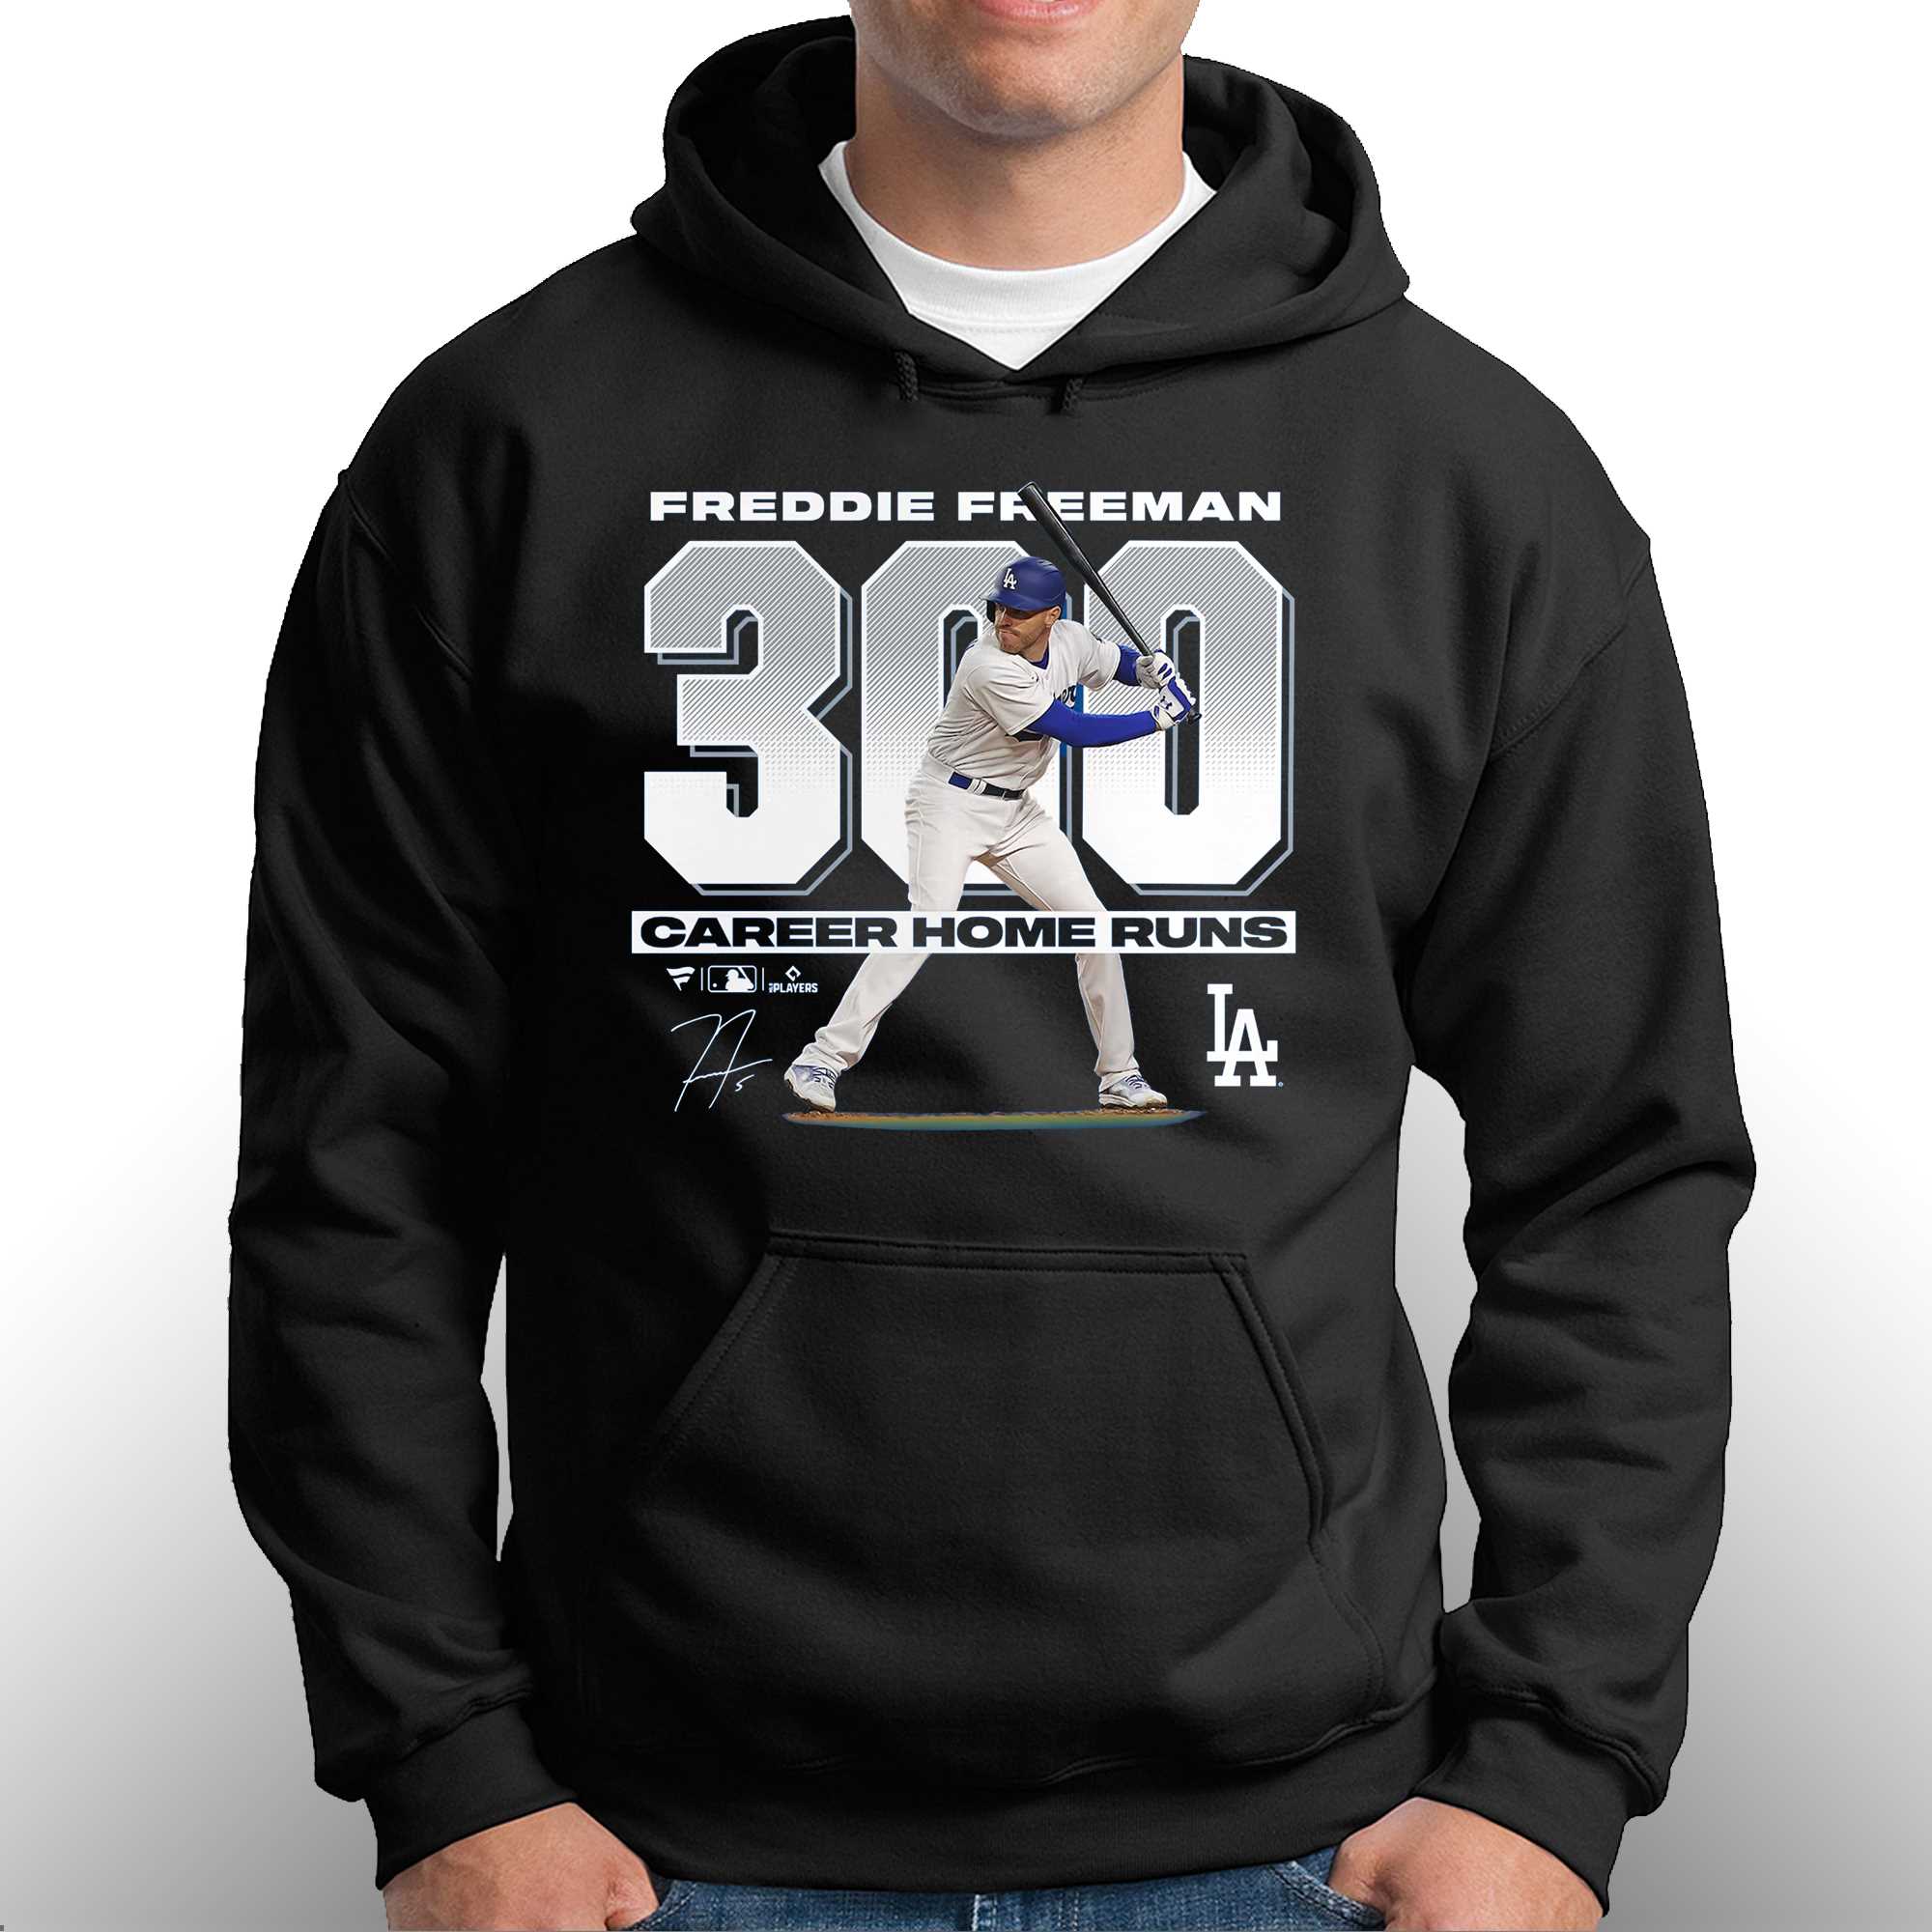 Vintage Freddie Freeman LA Dodgers shirt, hoodie, sweater, long